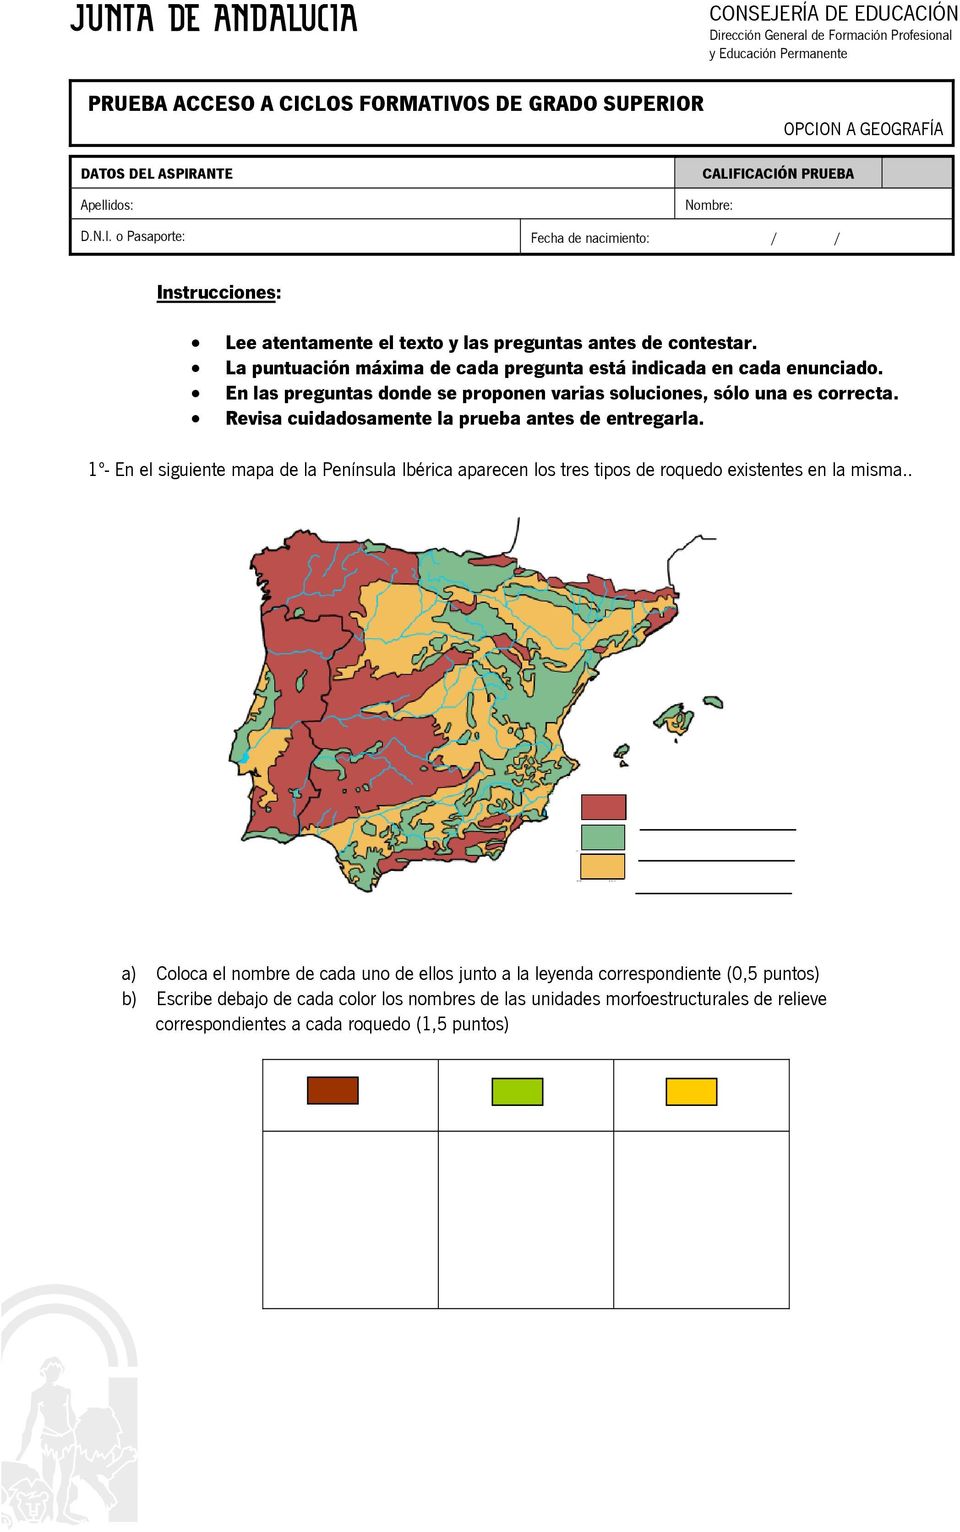 Revisa cuidadosamente la prueba antes de entregarla. 1º En el siguiente mapa de la Península Ibérica aparecen los tres tipos de roquedo existentes en la misma.